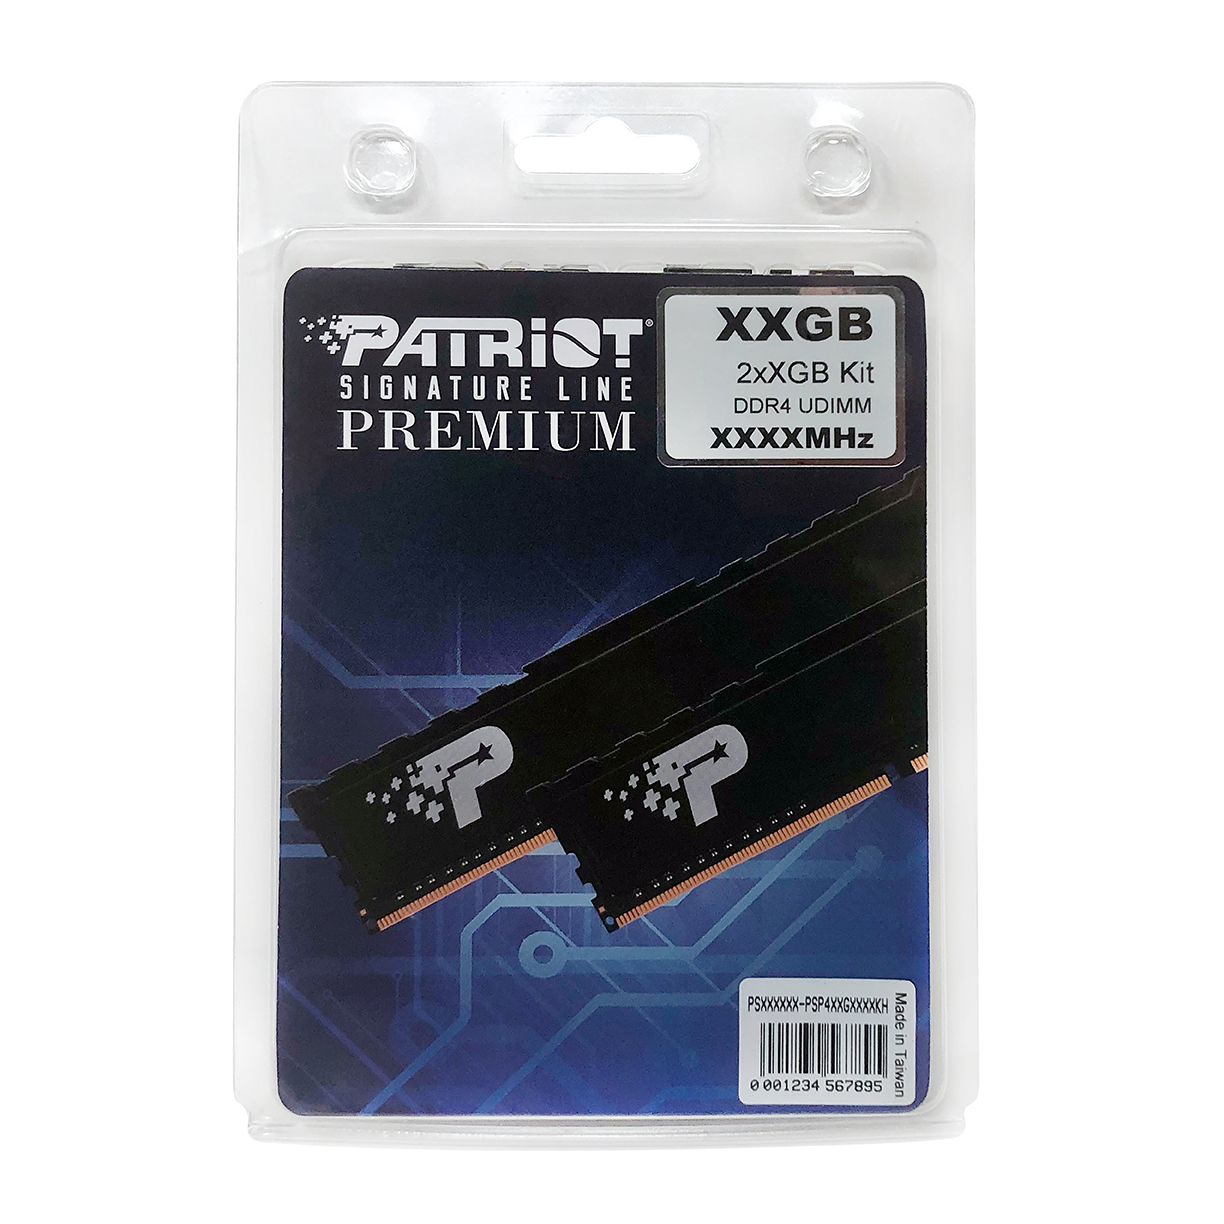 Patriot Signature Premium Series - DDR4 UDIMM PC4-25600 (3200MHz)_Dual Kit with Heatshield